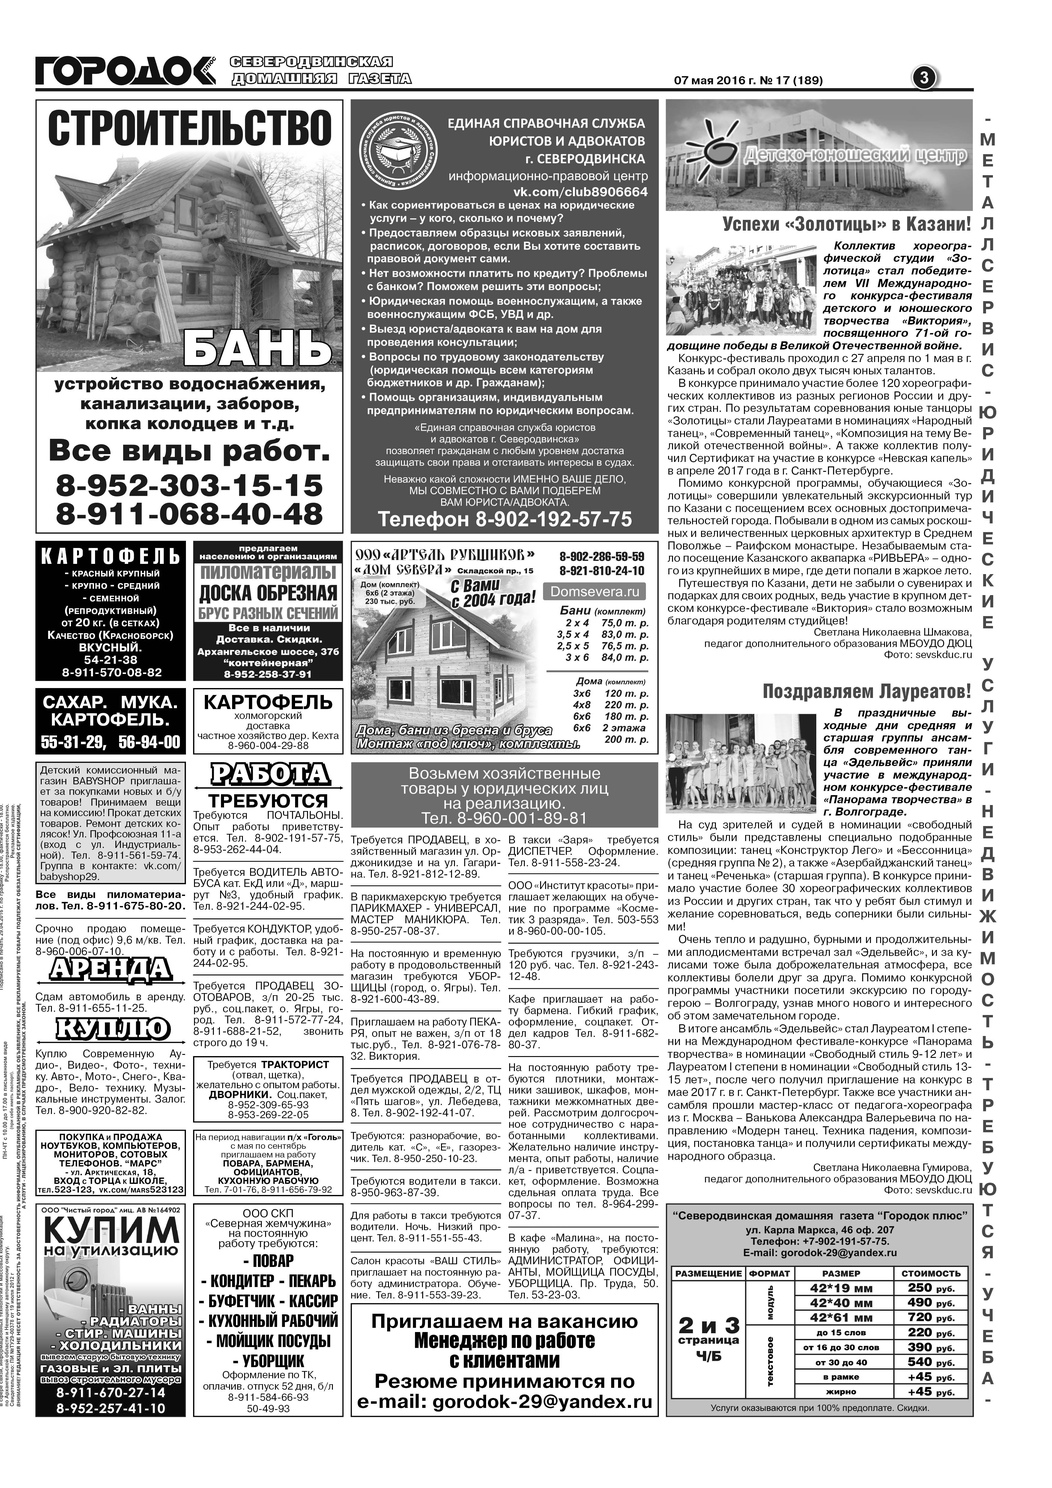 Городок плюс, выпуск номер 17 от 07 мая 2016 года, страница 3.